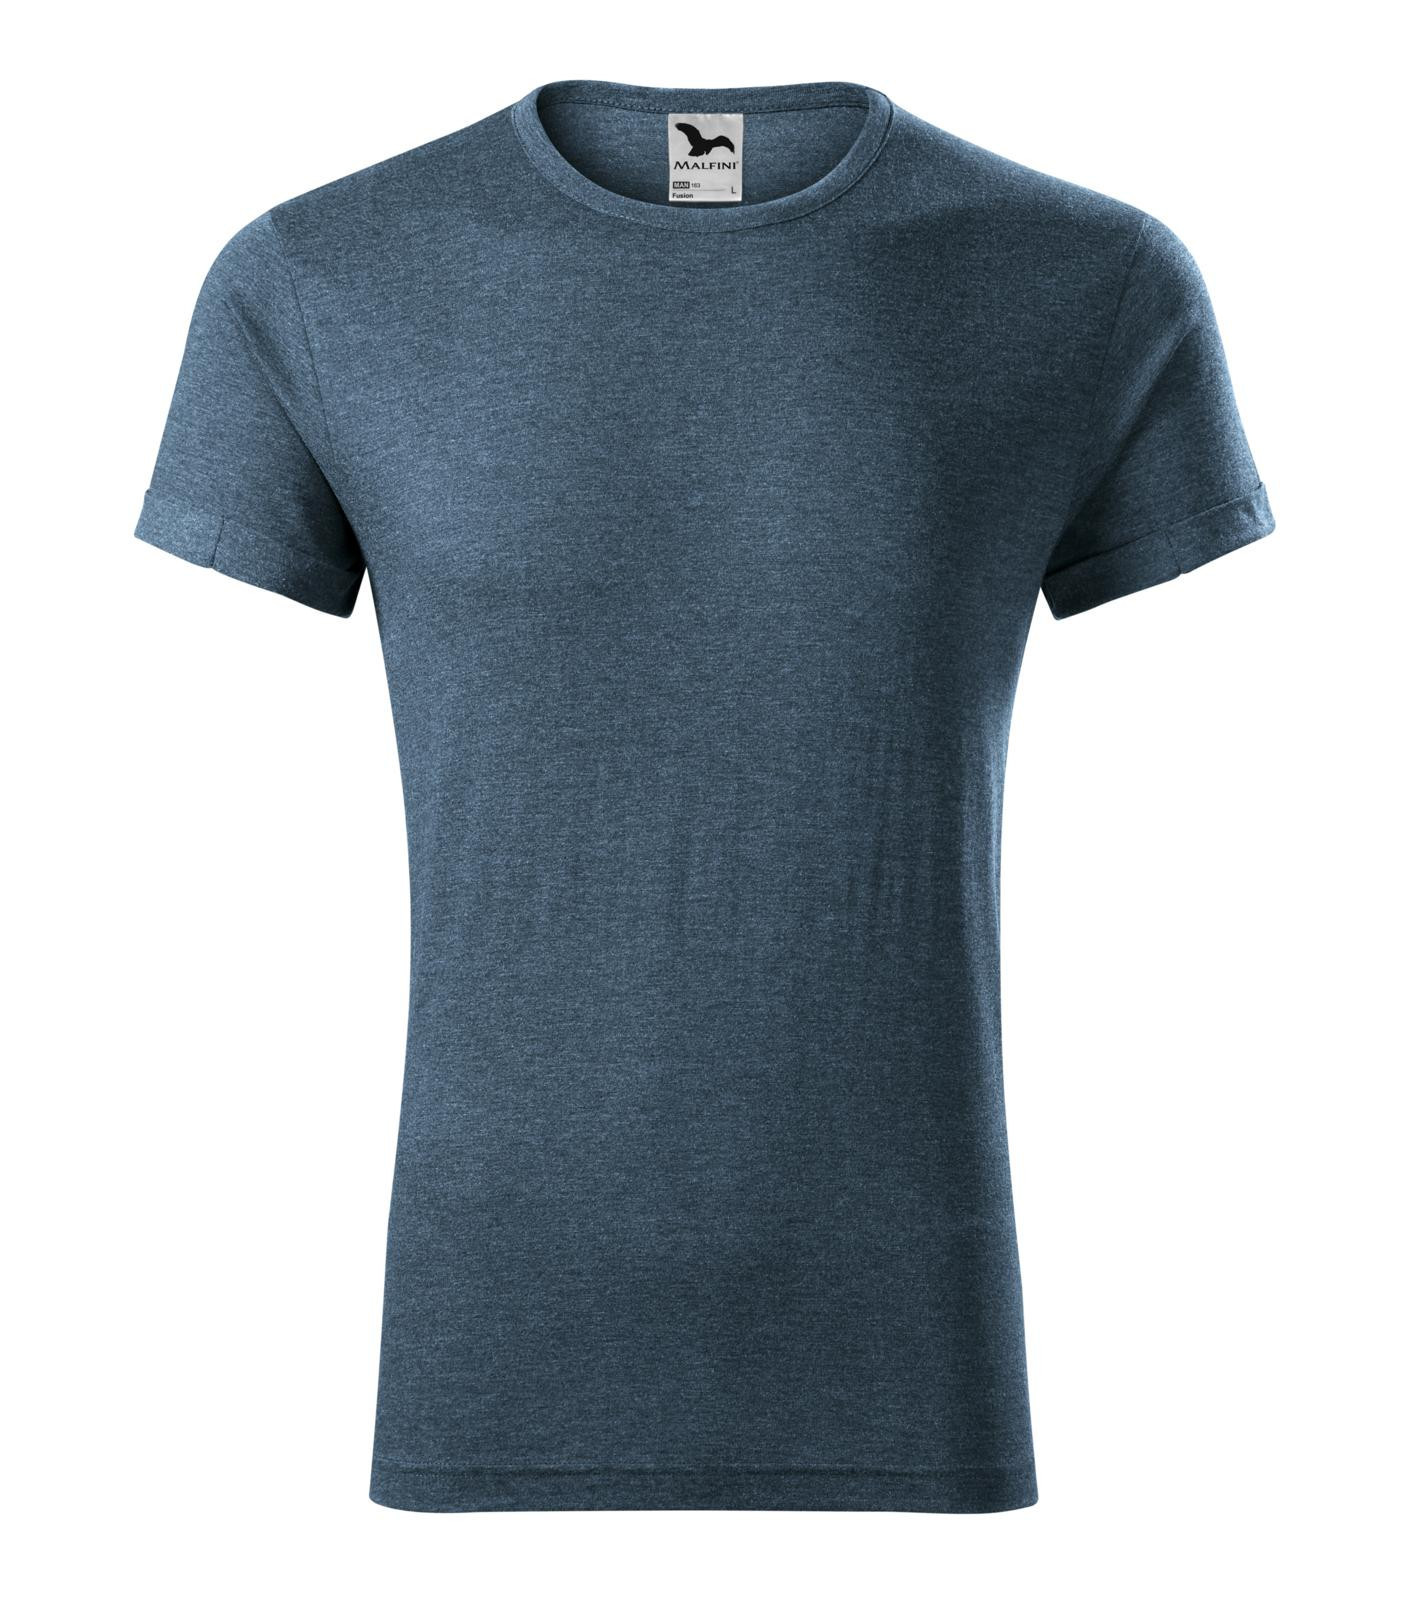 Pánske tričko Malfini Fusion 163 - veľkosť: S, farba: tmavý denim melír